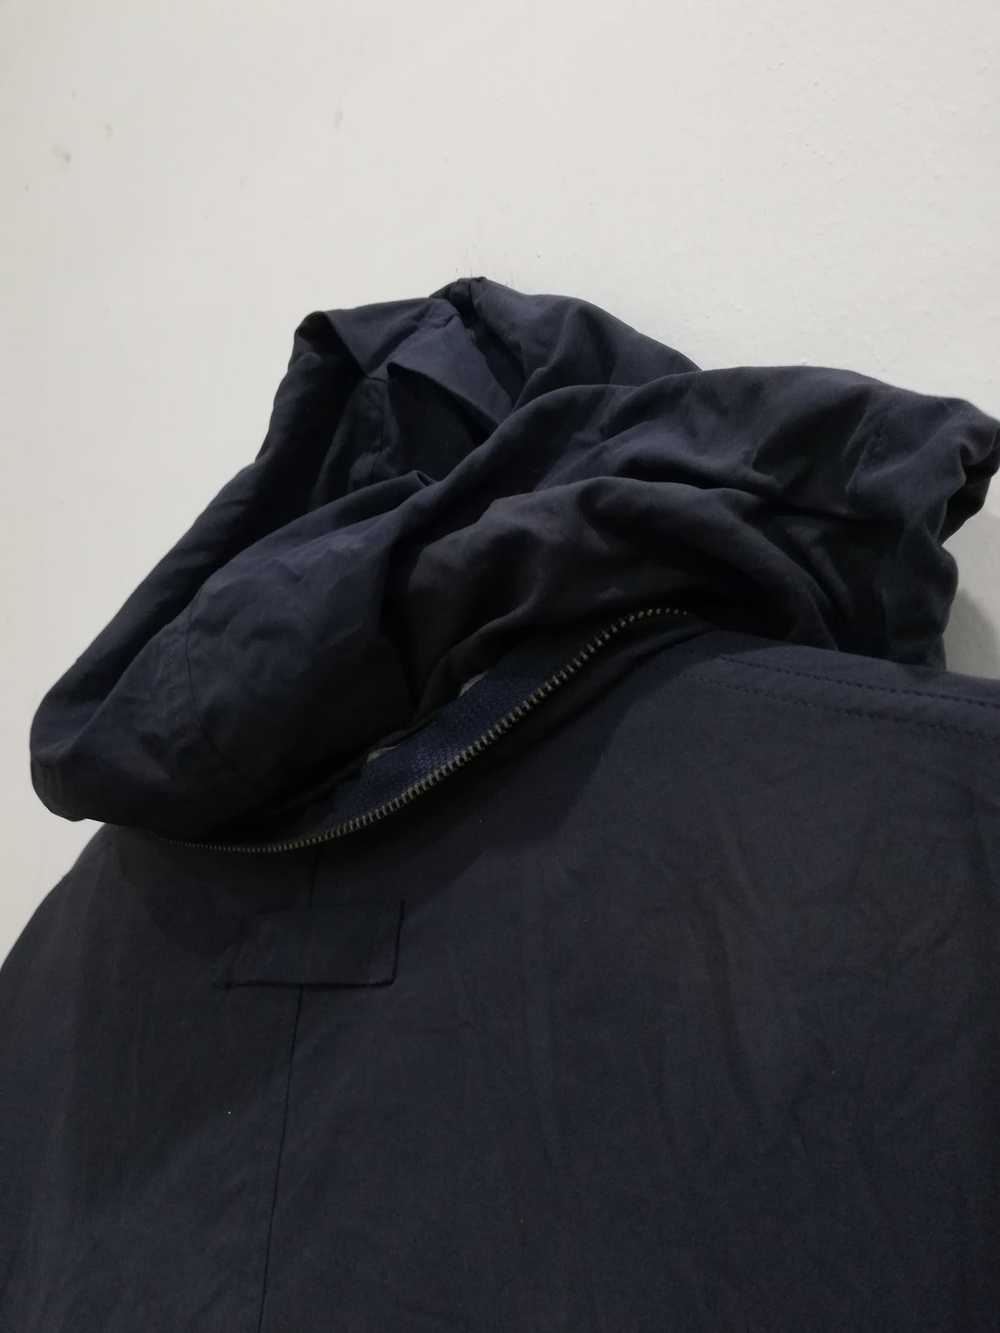 Designer × Mcgregor mc Gregor sportwear jacket - image 5